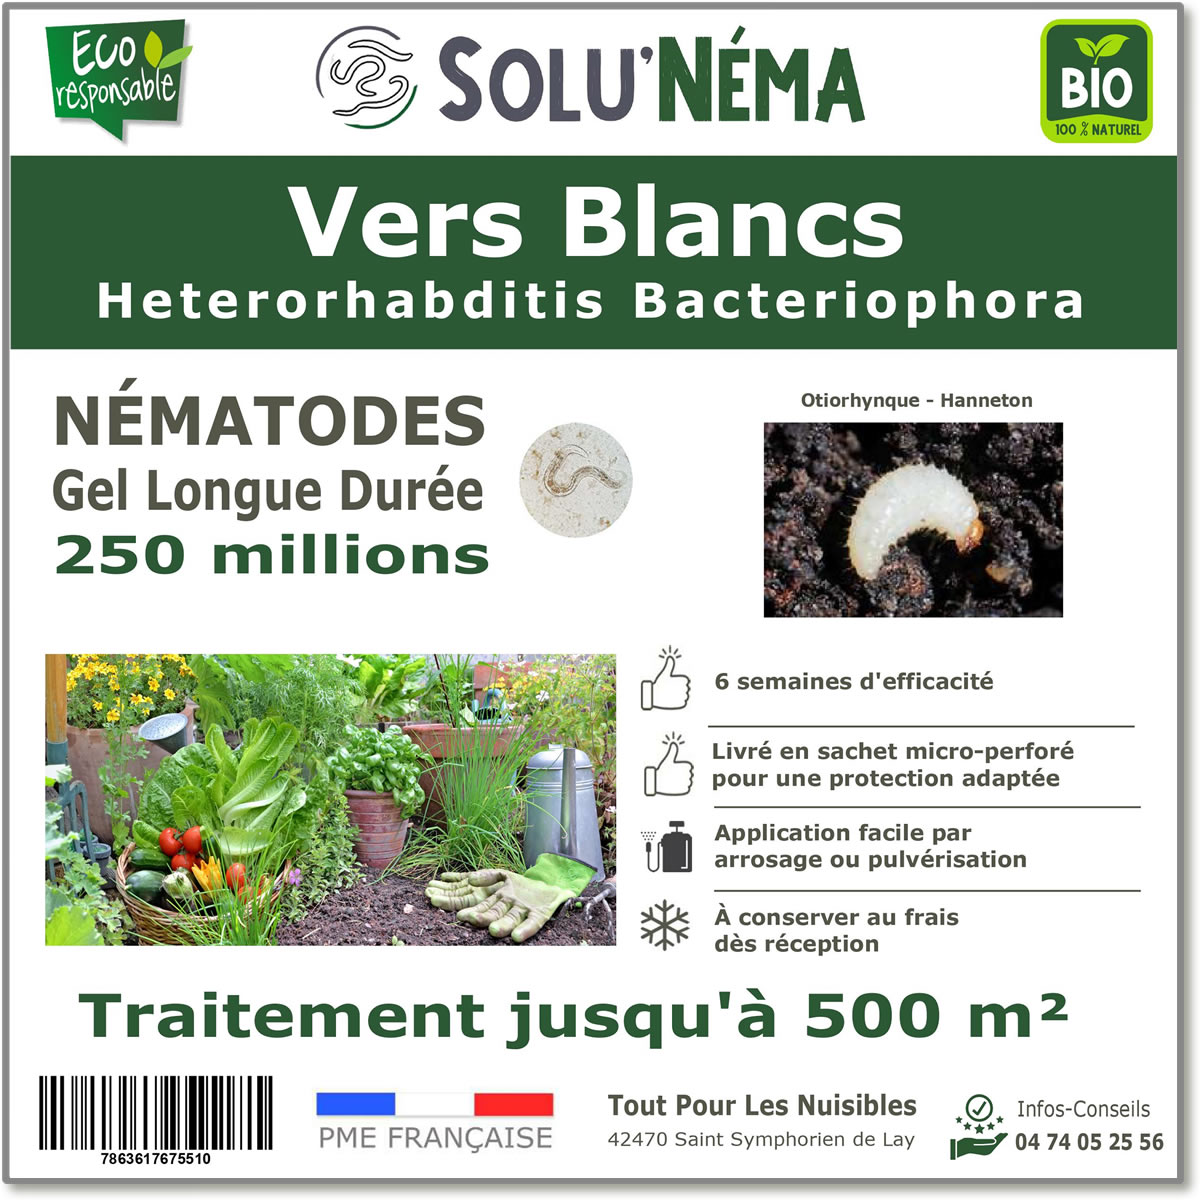 Nématodes (HB) Solunema pour Les vers blancx - otiorhinque - hanneton 250 millions SF